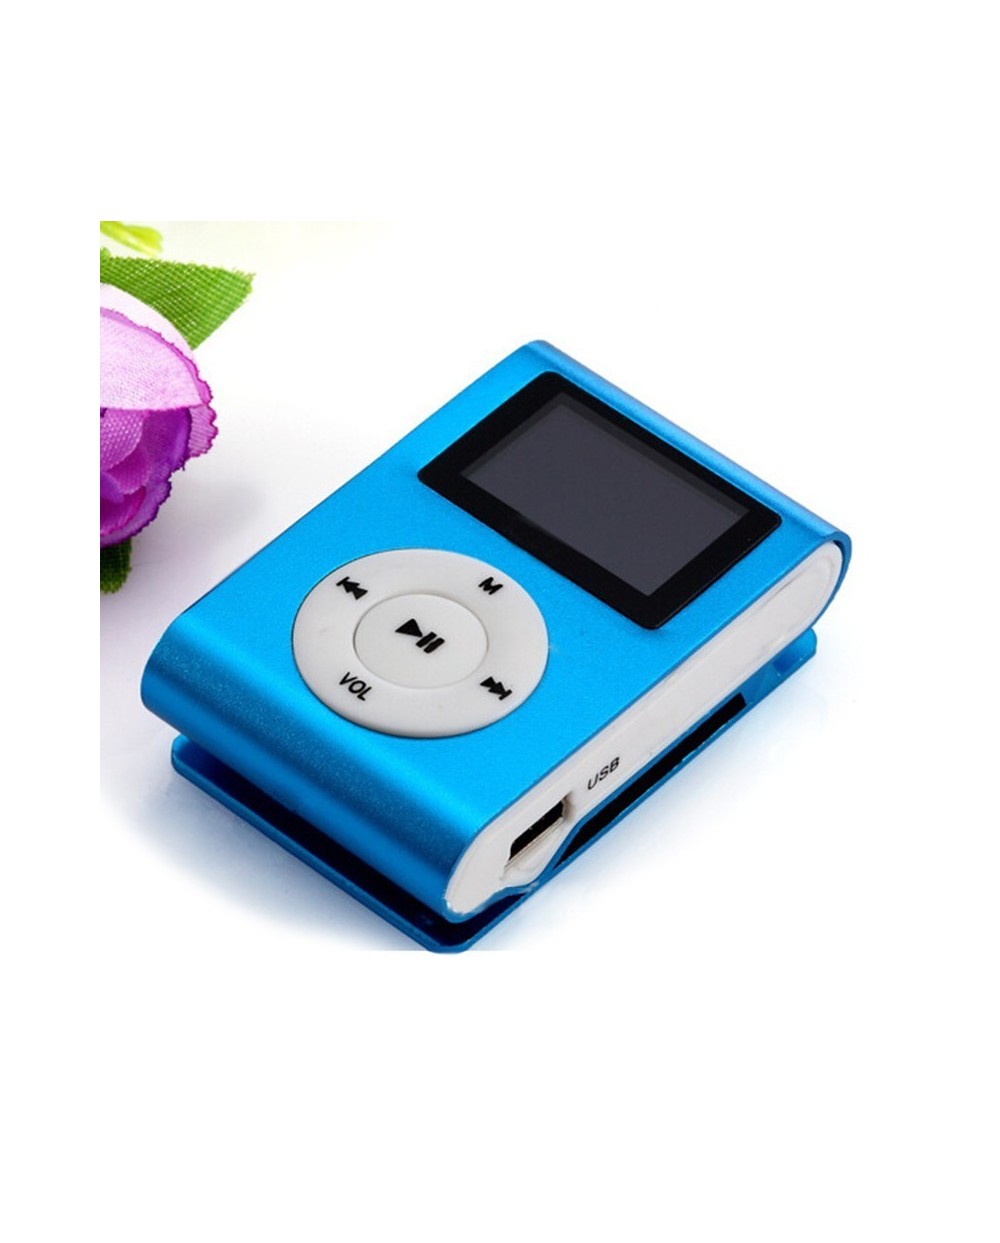 Mini MP3 Player με Οθόνη, Υποδοχή Κάρτας SD/MP3 - Ράδιο EZRA MP3-2